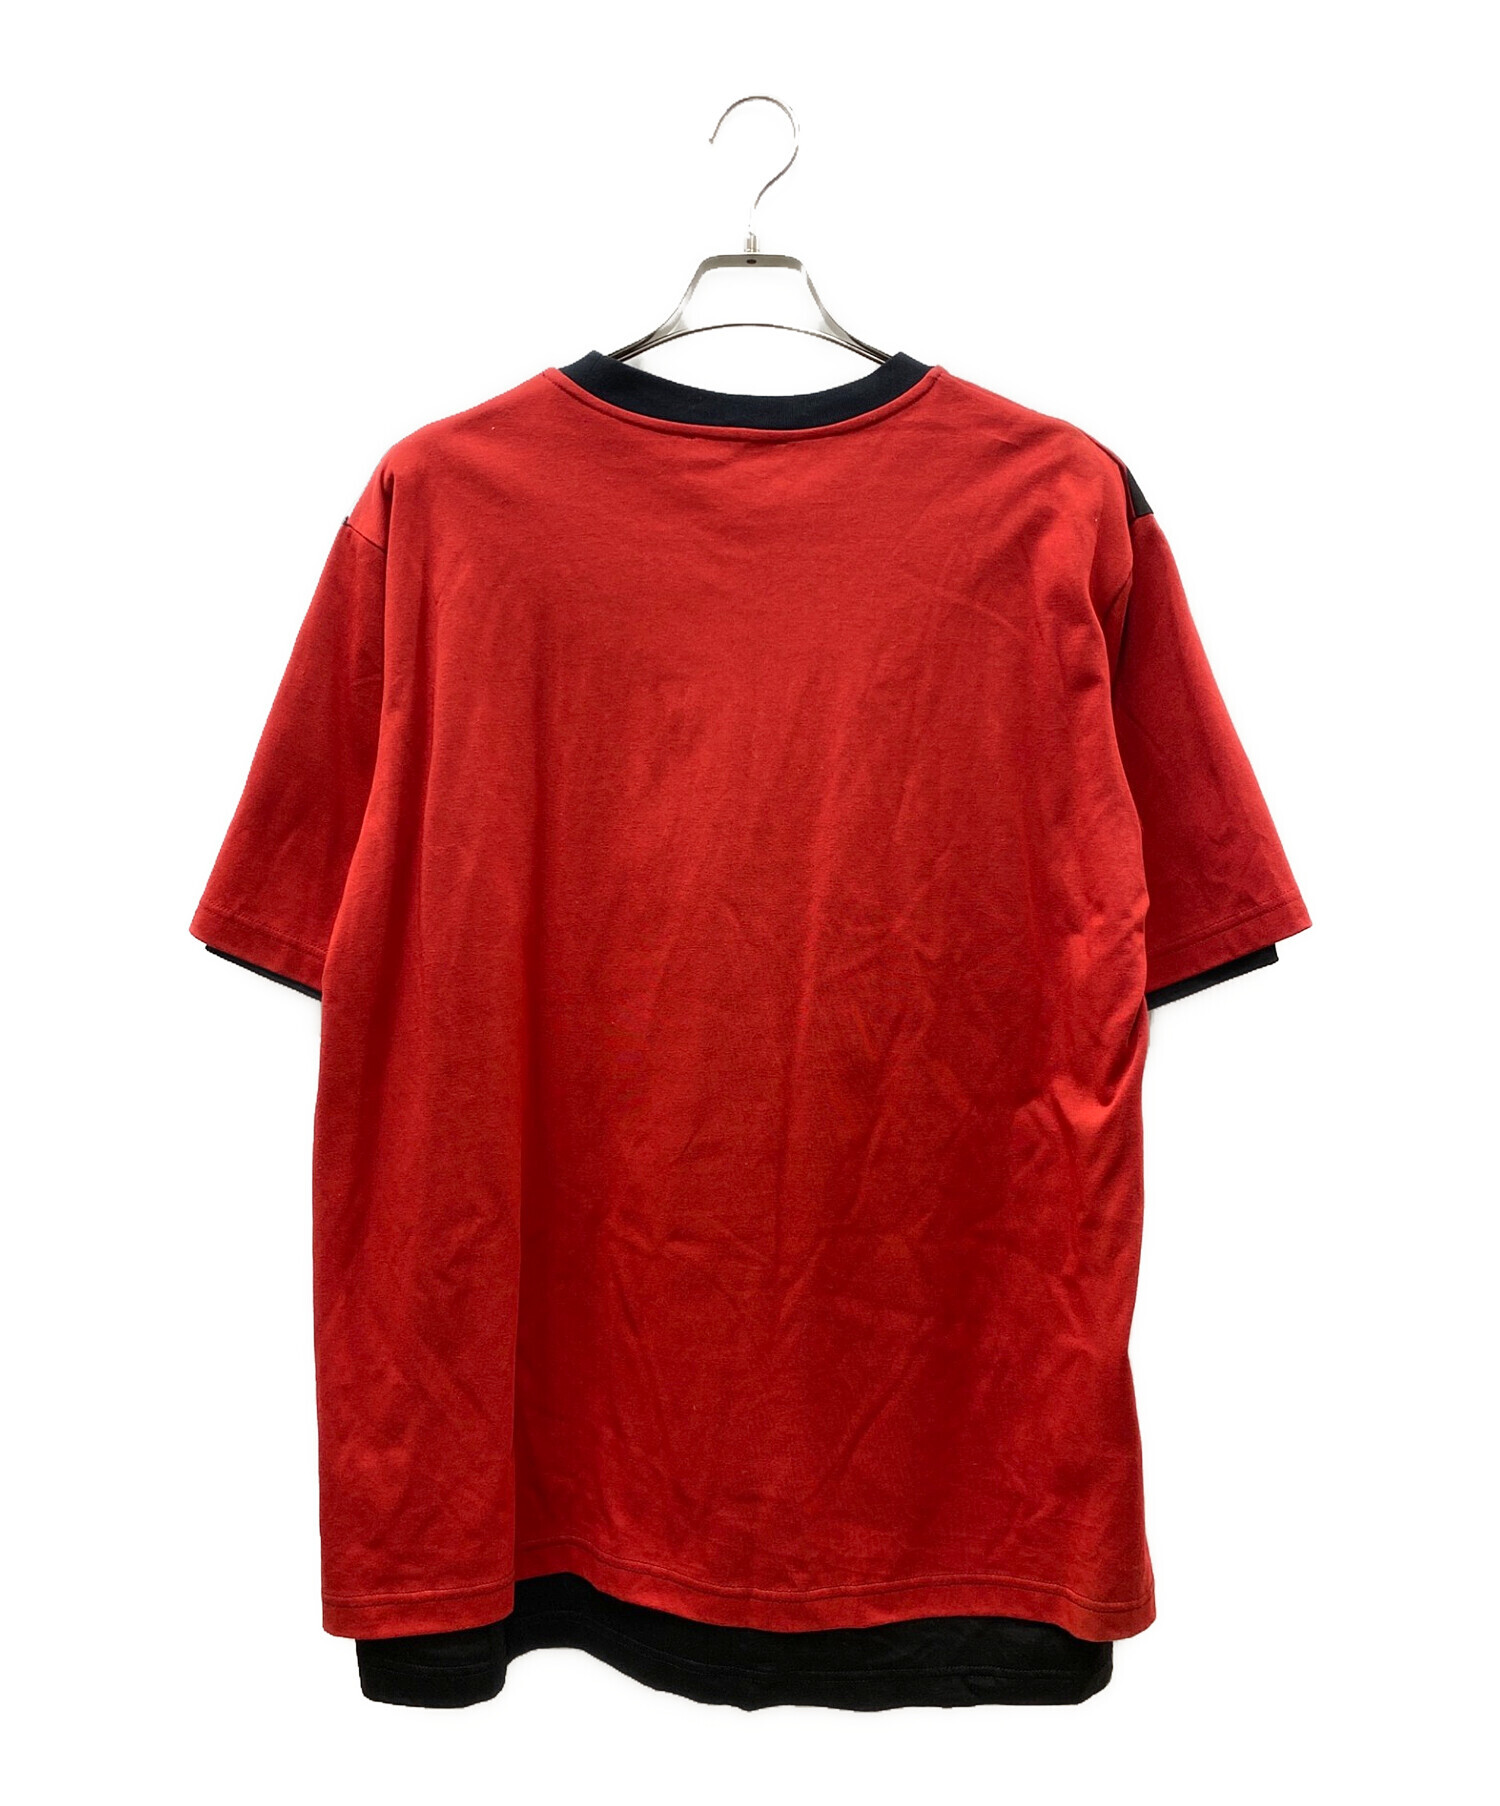 TAAKK (ターク) レイヤードプリントTシャツ レッド×ブラック サイズ:2